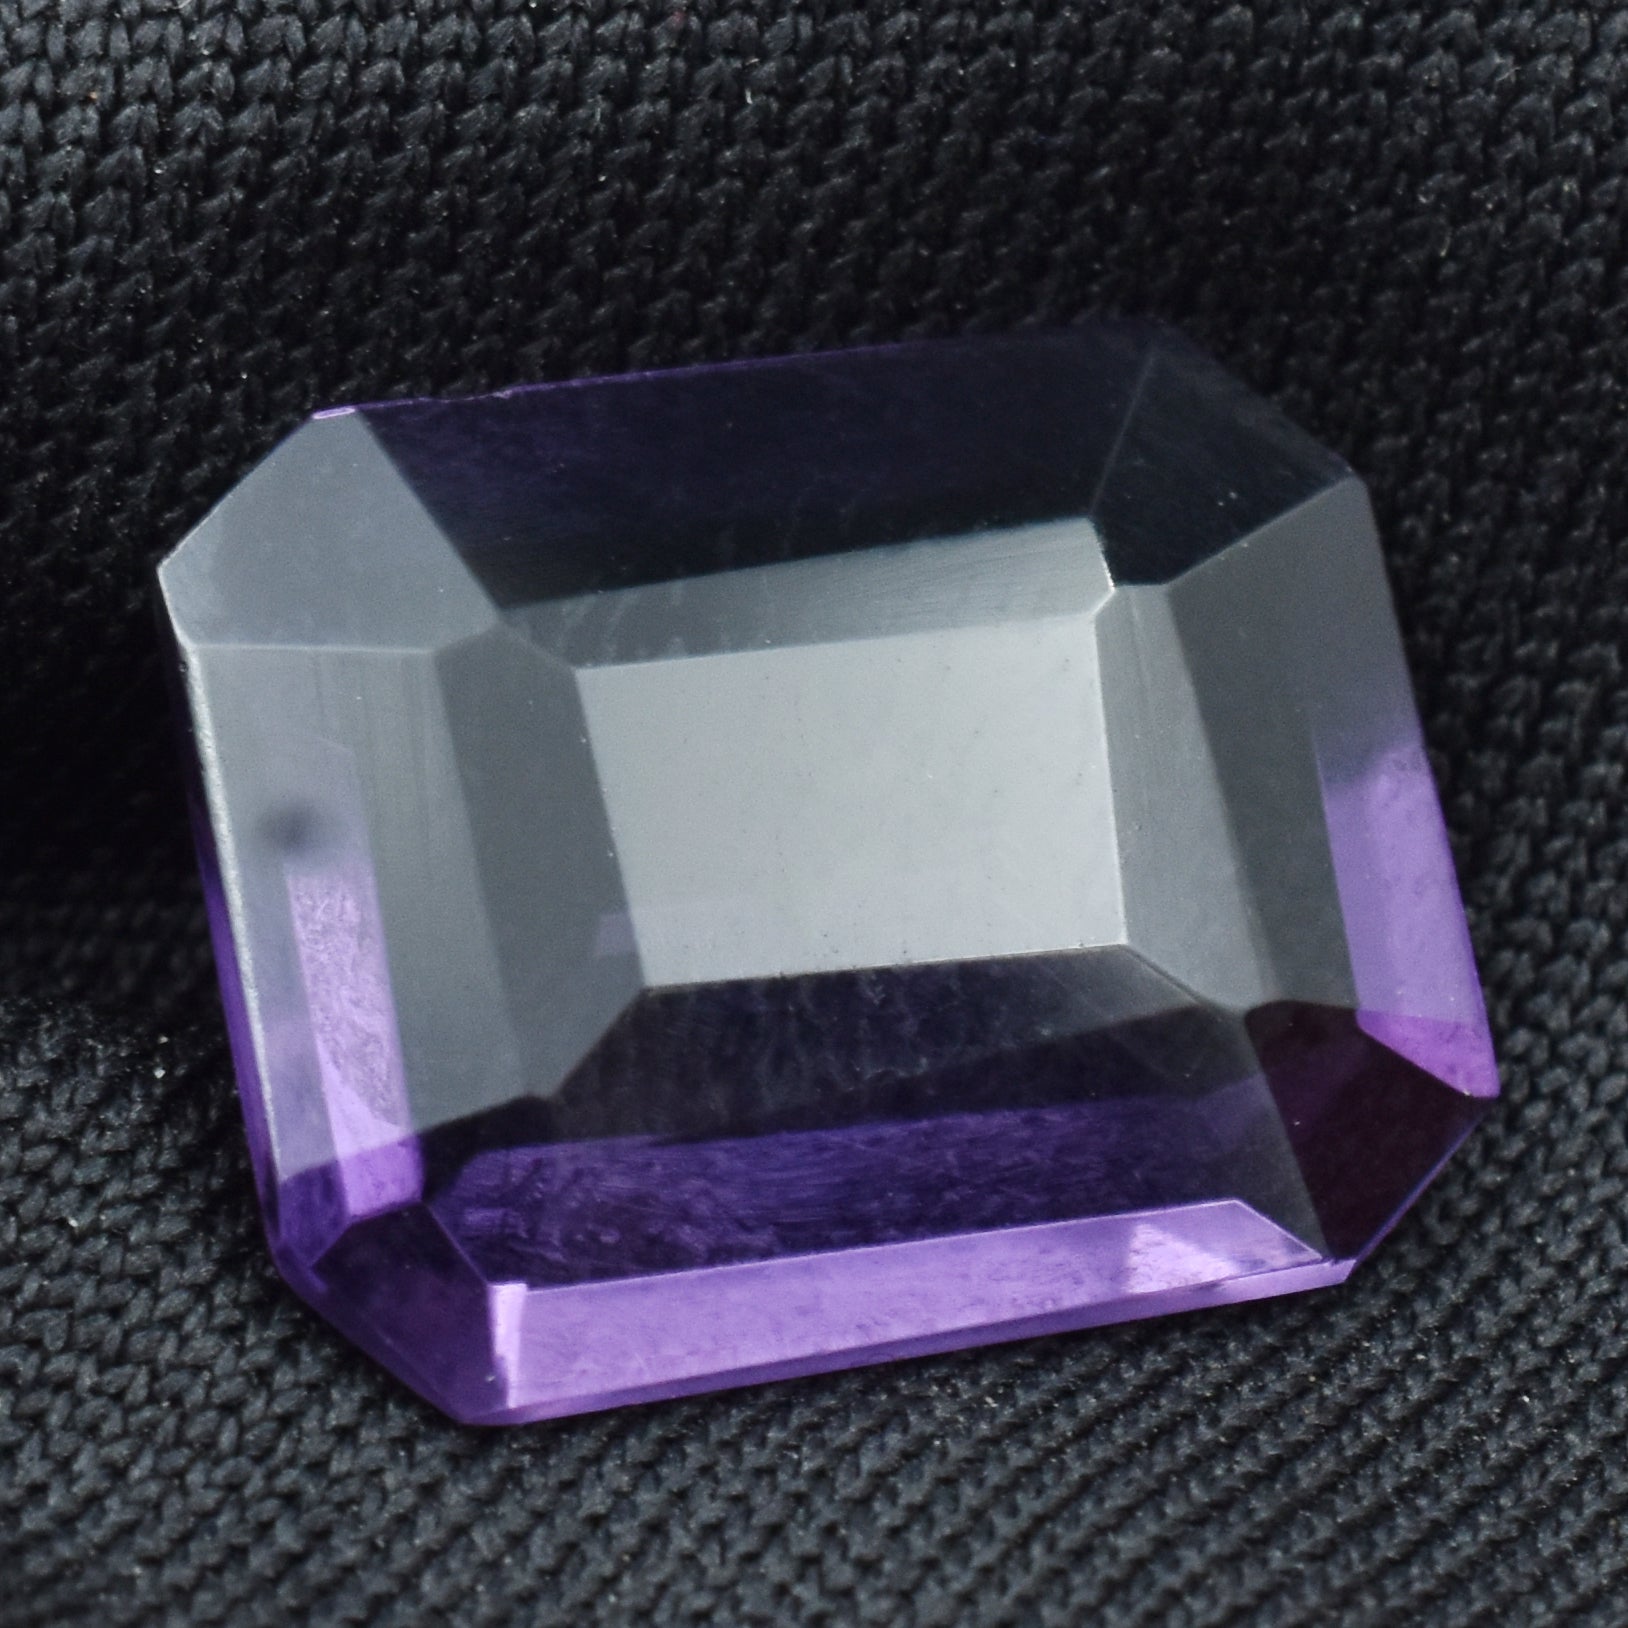 Best Certified 4.50 Carat Purple Rare Tanzanite Emerald Cut Natural Certified Loose Gemstone